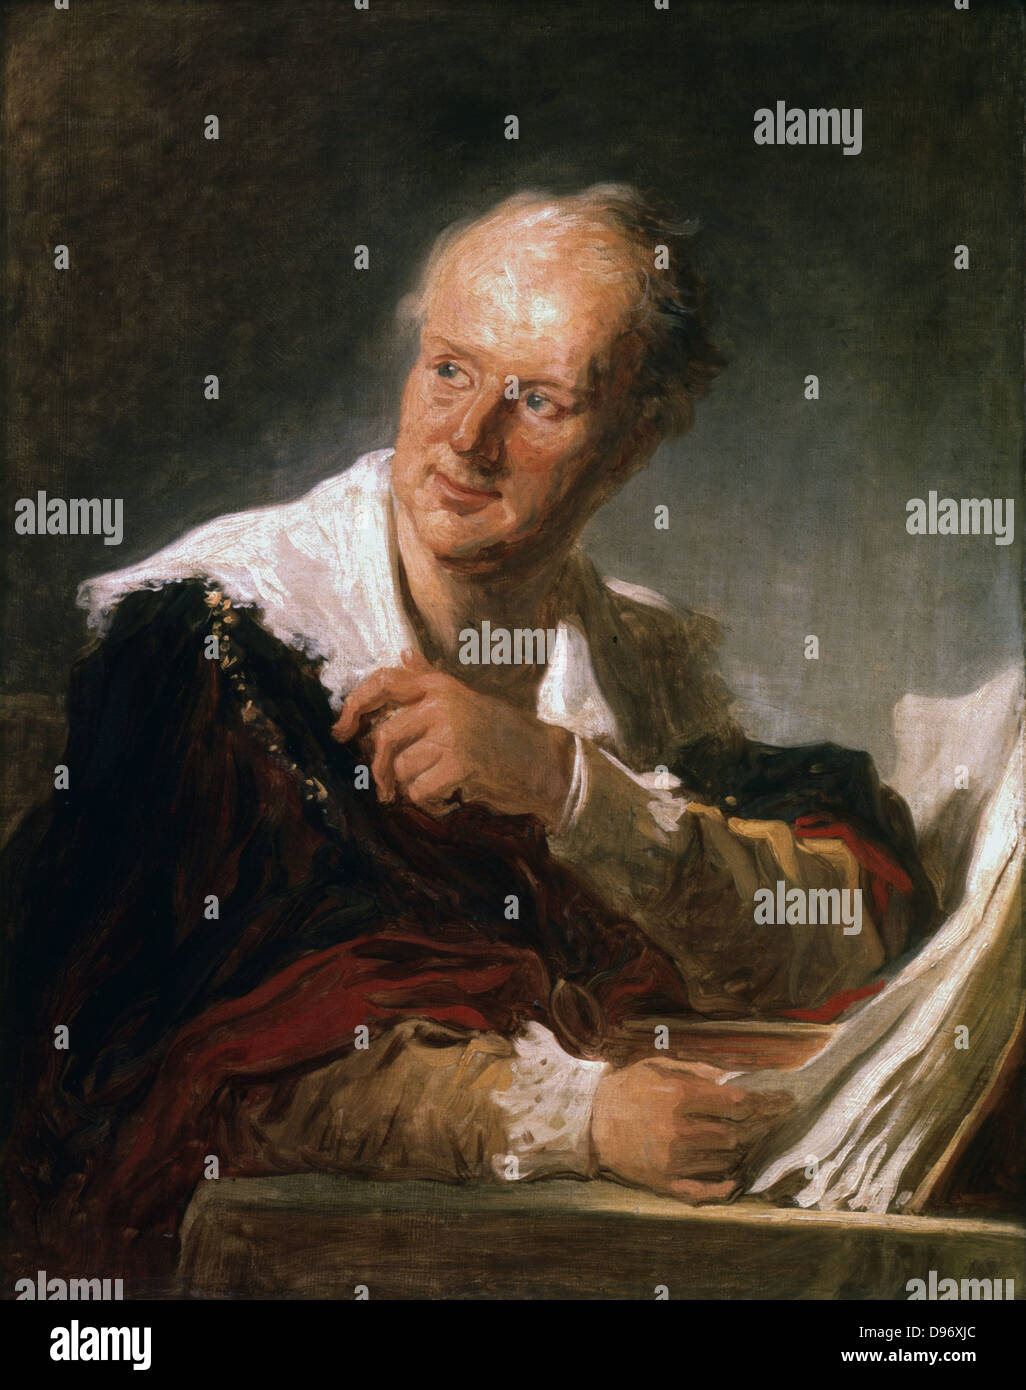 Denis Diderot (1713-1784) französischer Mann von Briefen und Enzyklopädist. Porträt von Jean Honore Fragonard (1732-1806) Öl auf Leinwand. Stockfoto